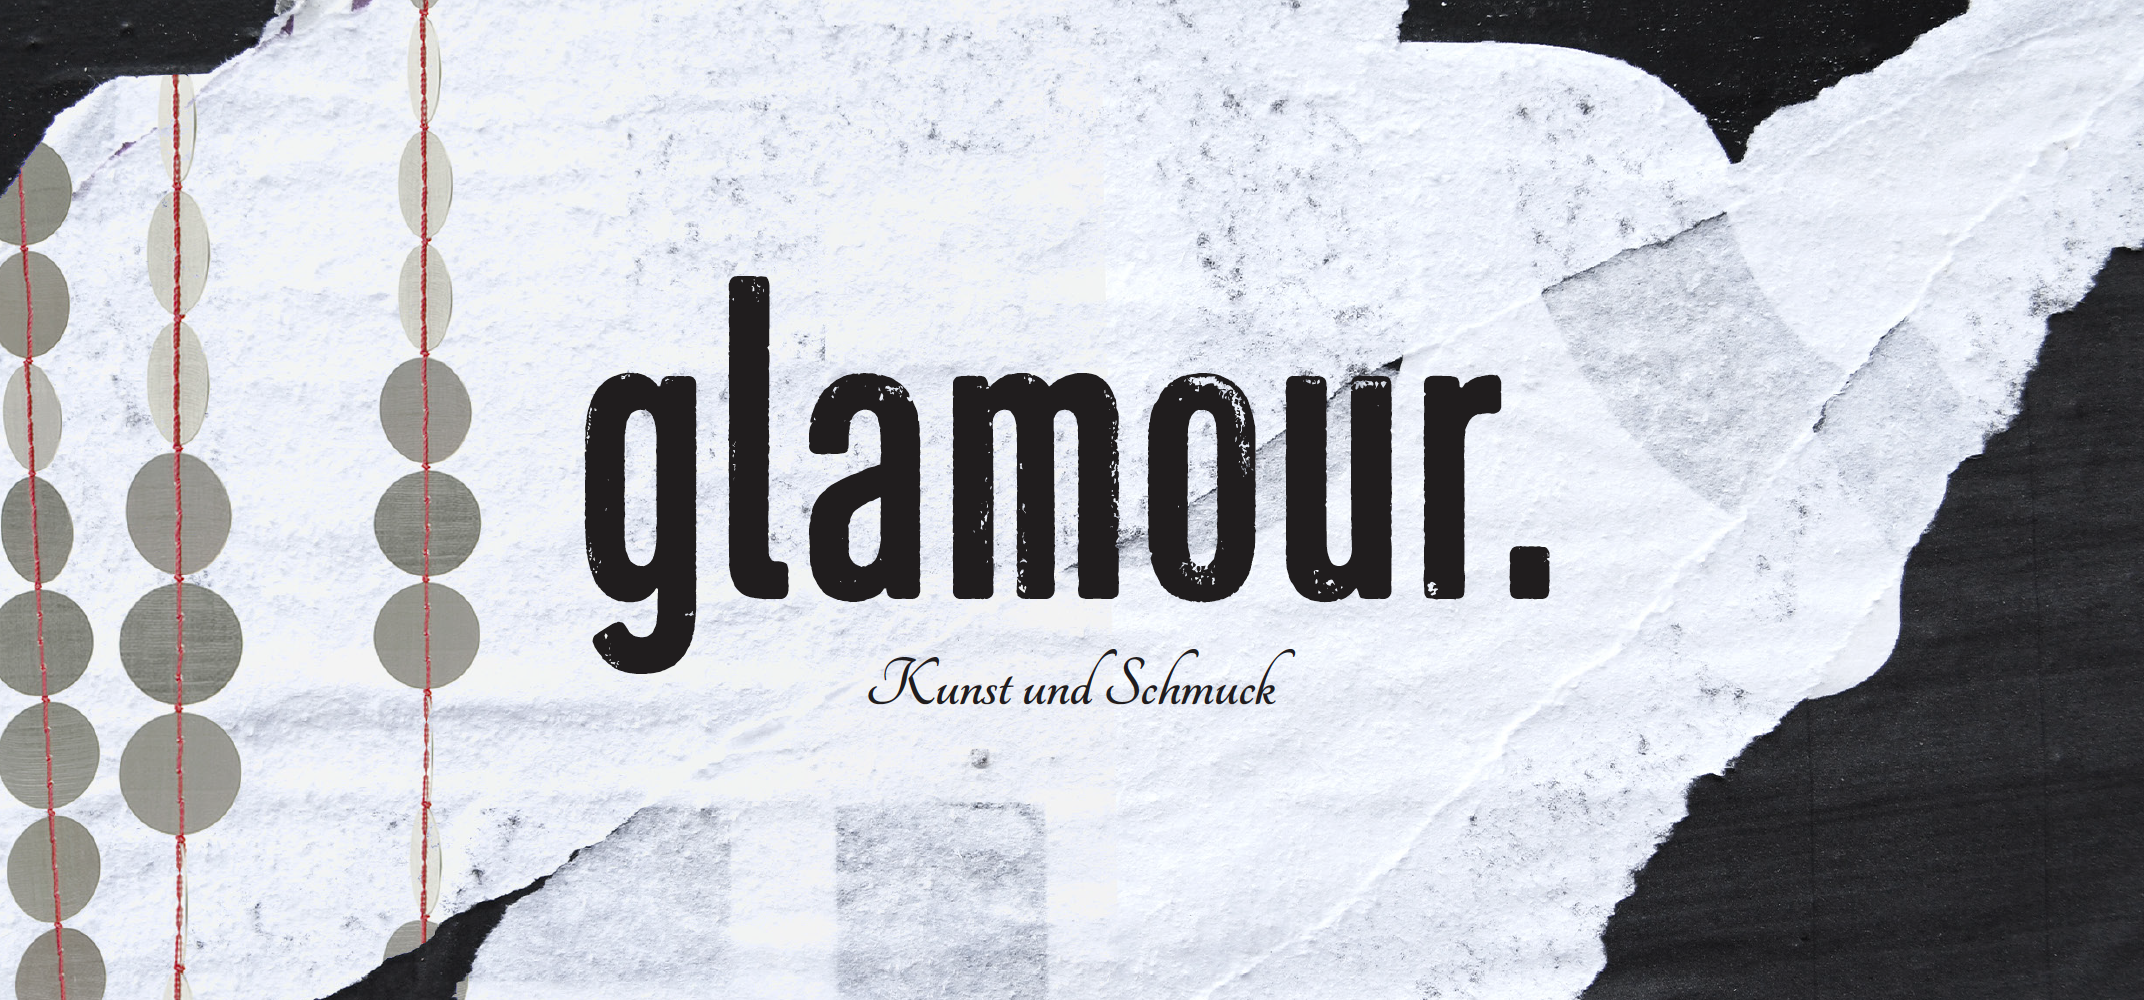 Glamour – Ausstellung im Kunstentschlossen